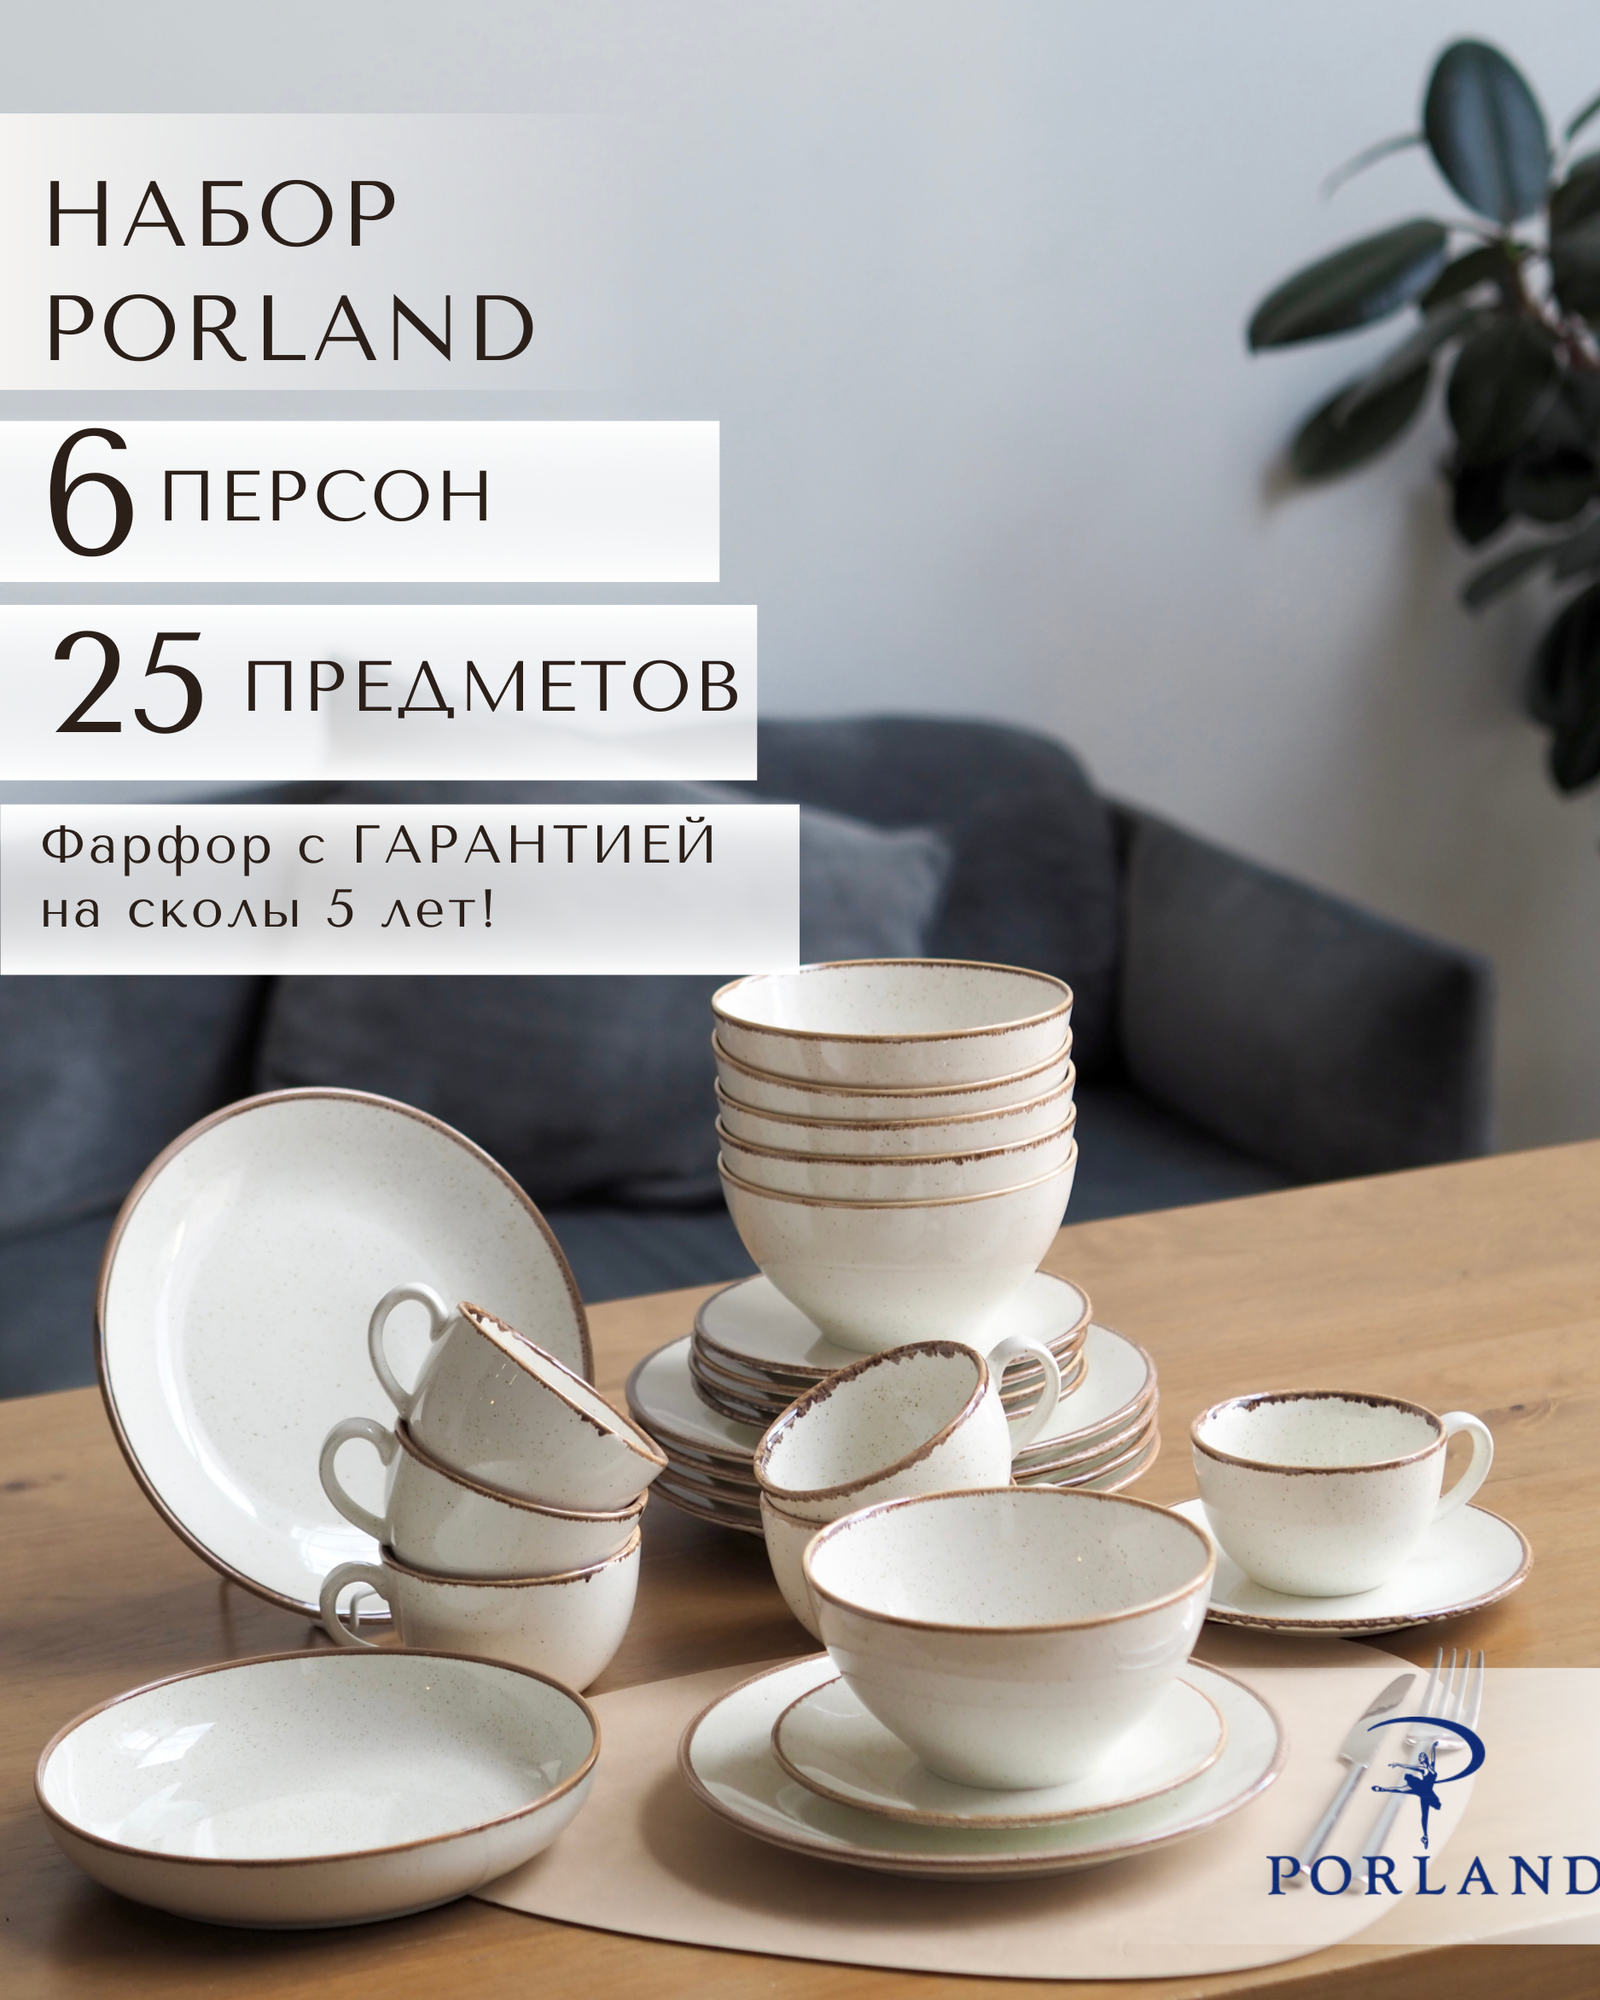 Набор столовой посуды Porland "Seasons" на 6 персон, 25 предметов